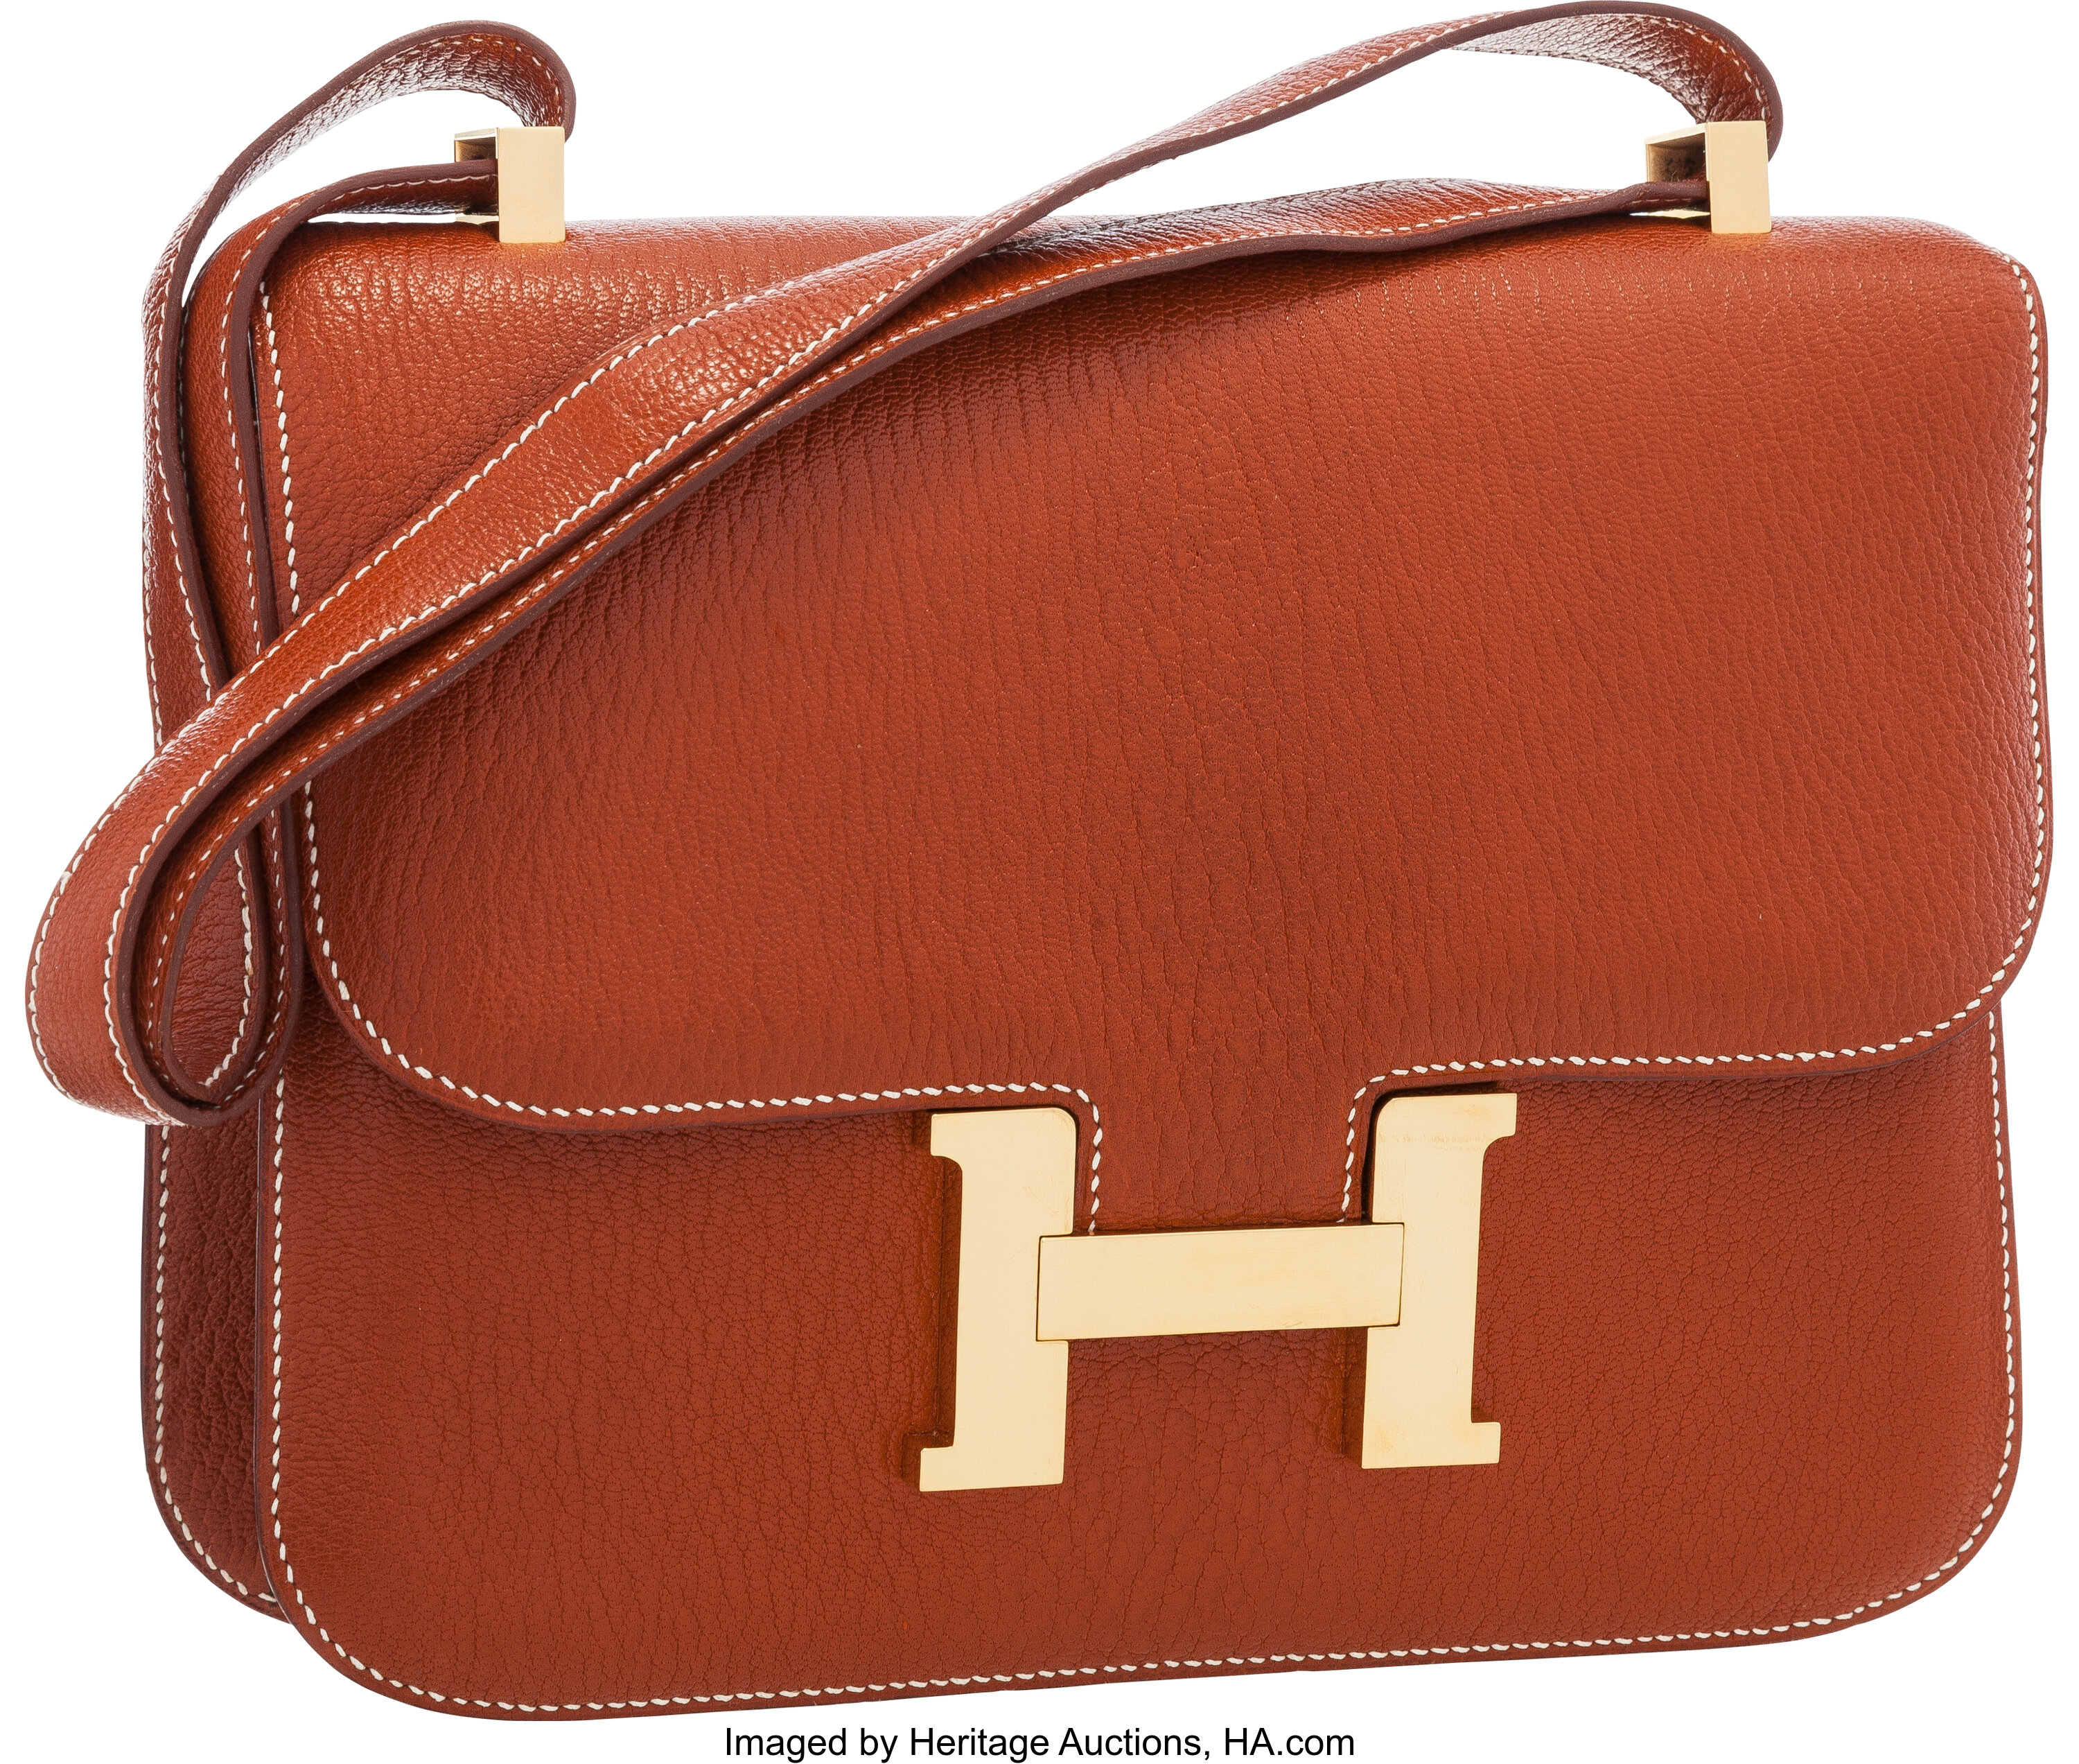 Constance Hermes Bag Names - 7 For Sale on 1stDibs  hermes names, hermes  bags names, all hermes bags names